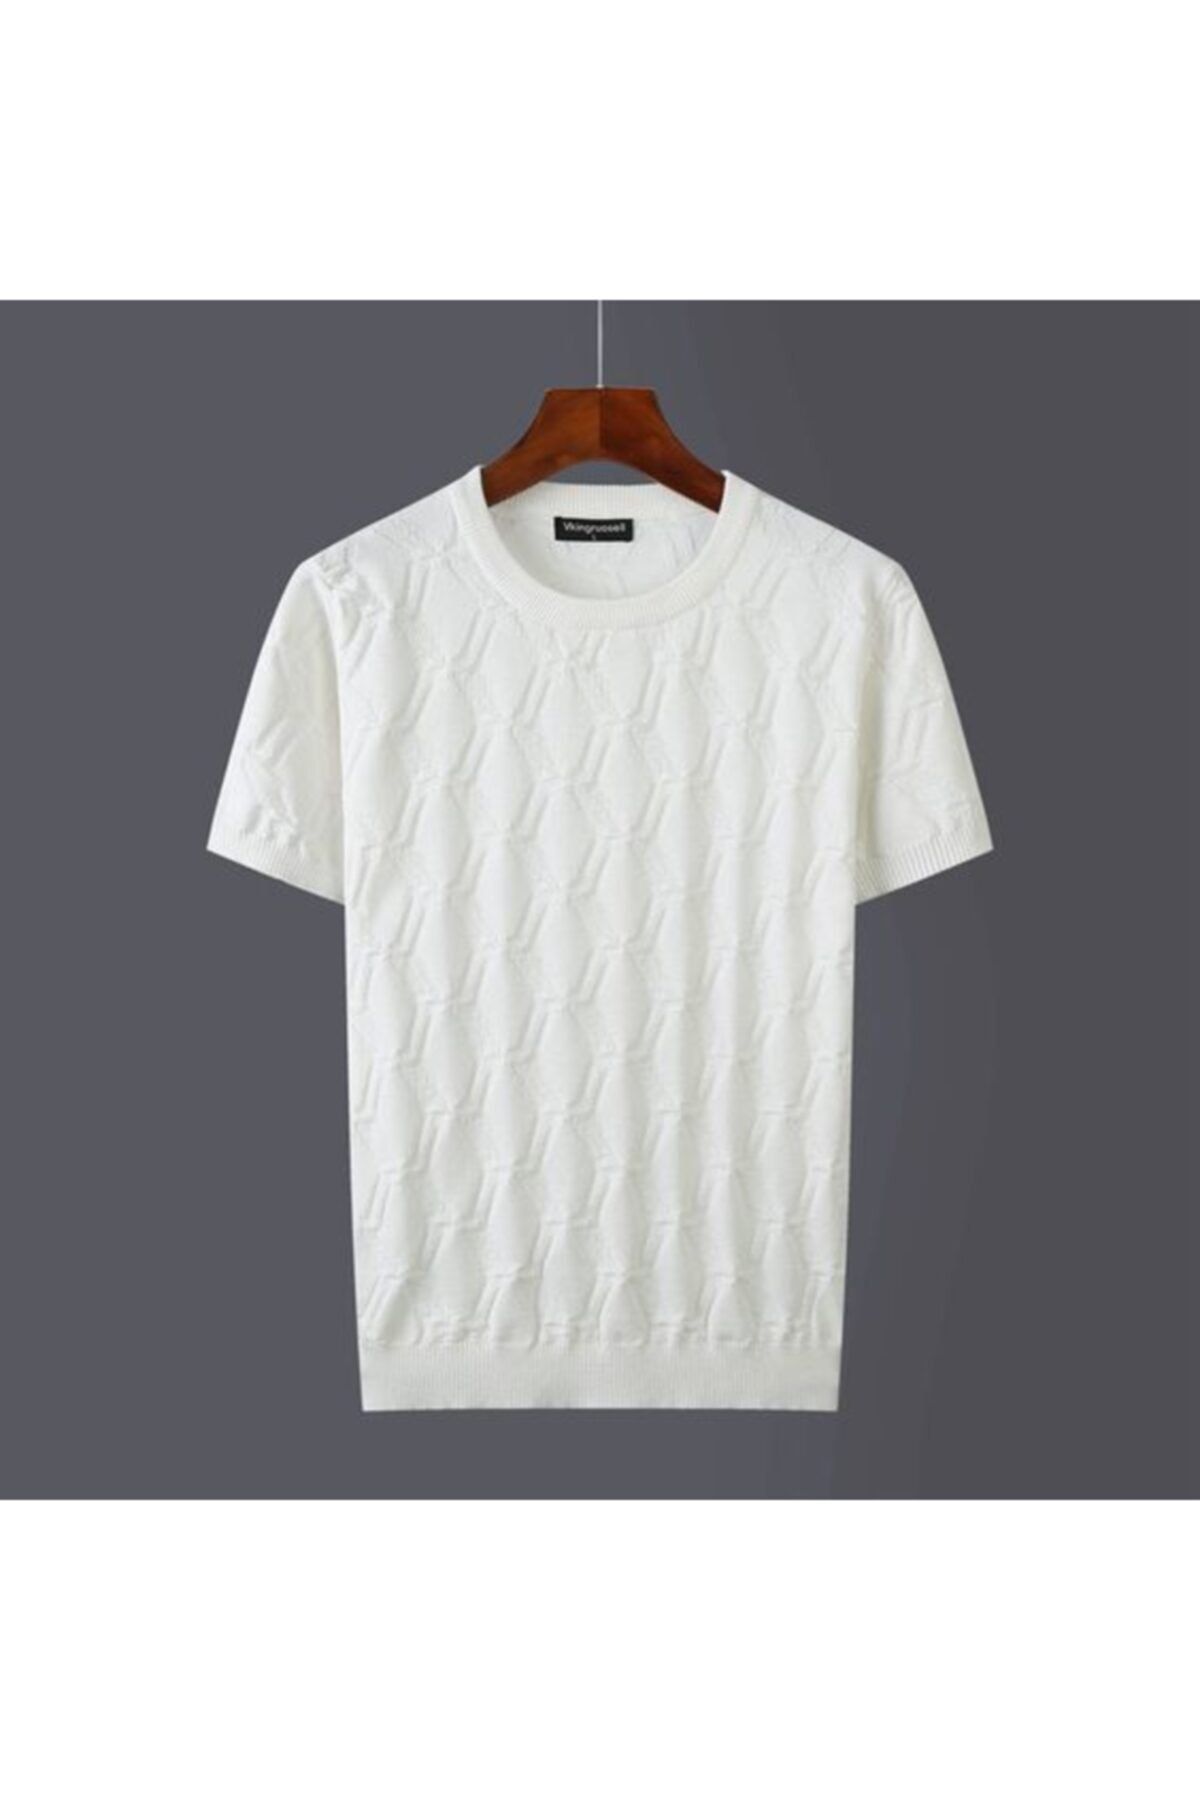 COOL TARZ Beyaz Erkek Yuvarlak Yaka Desenli Örme T-shirt